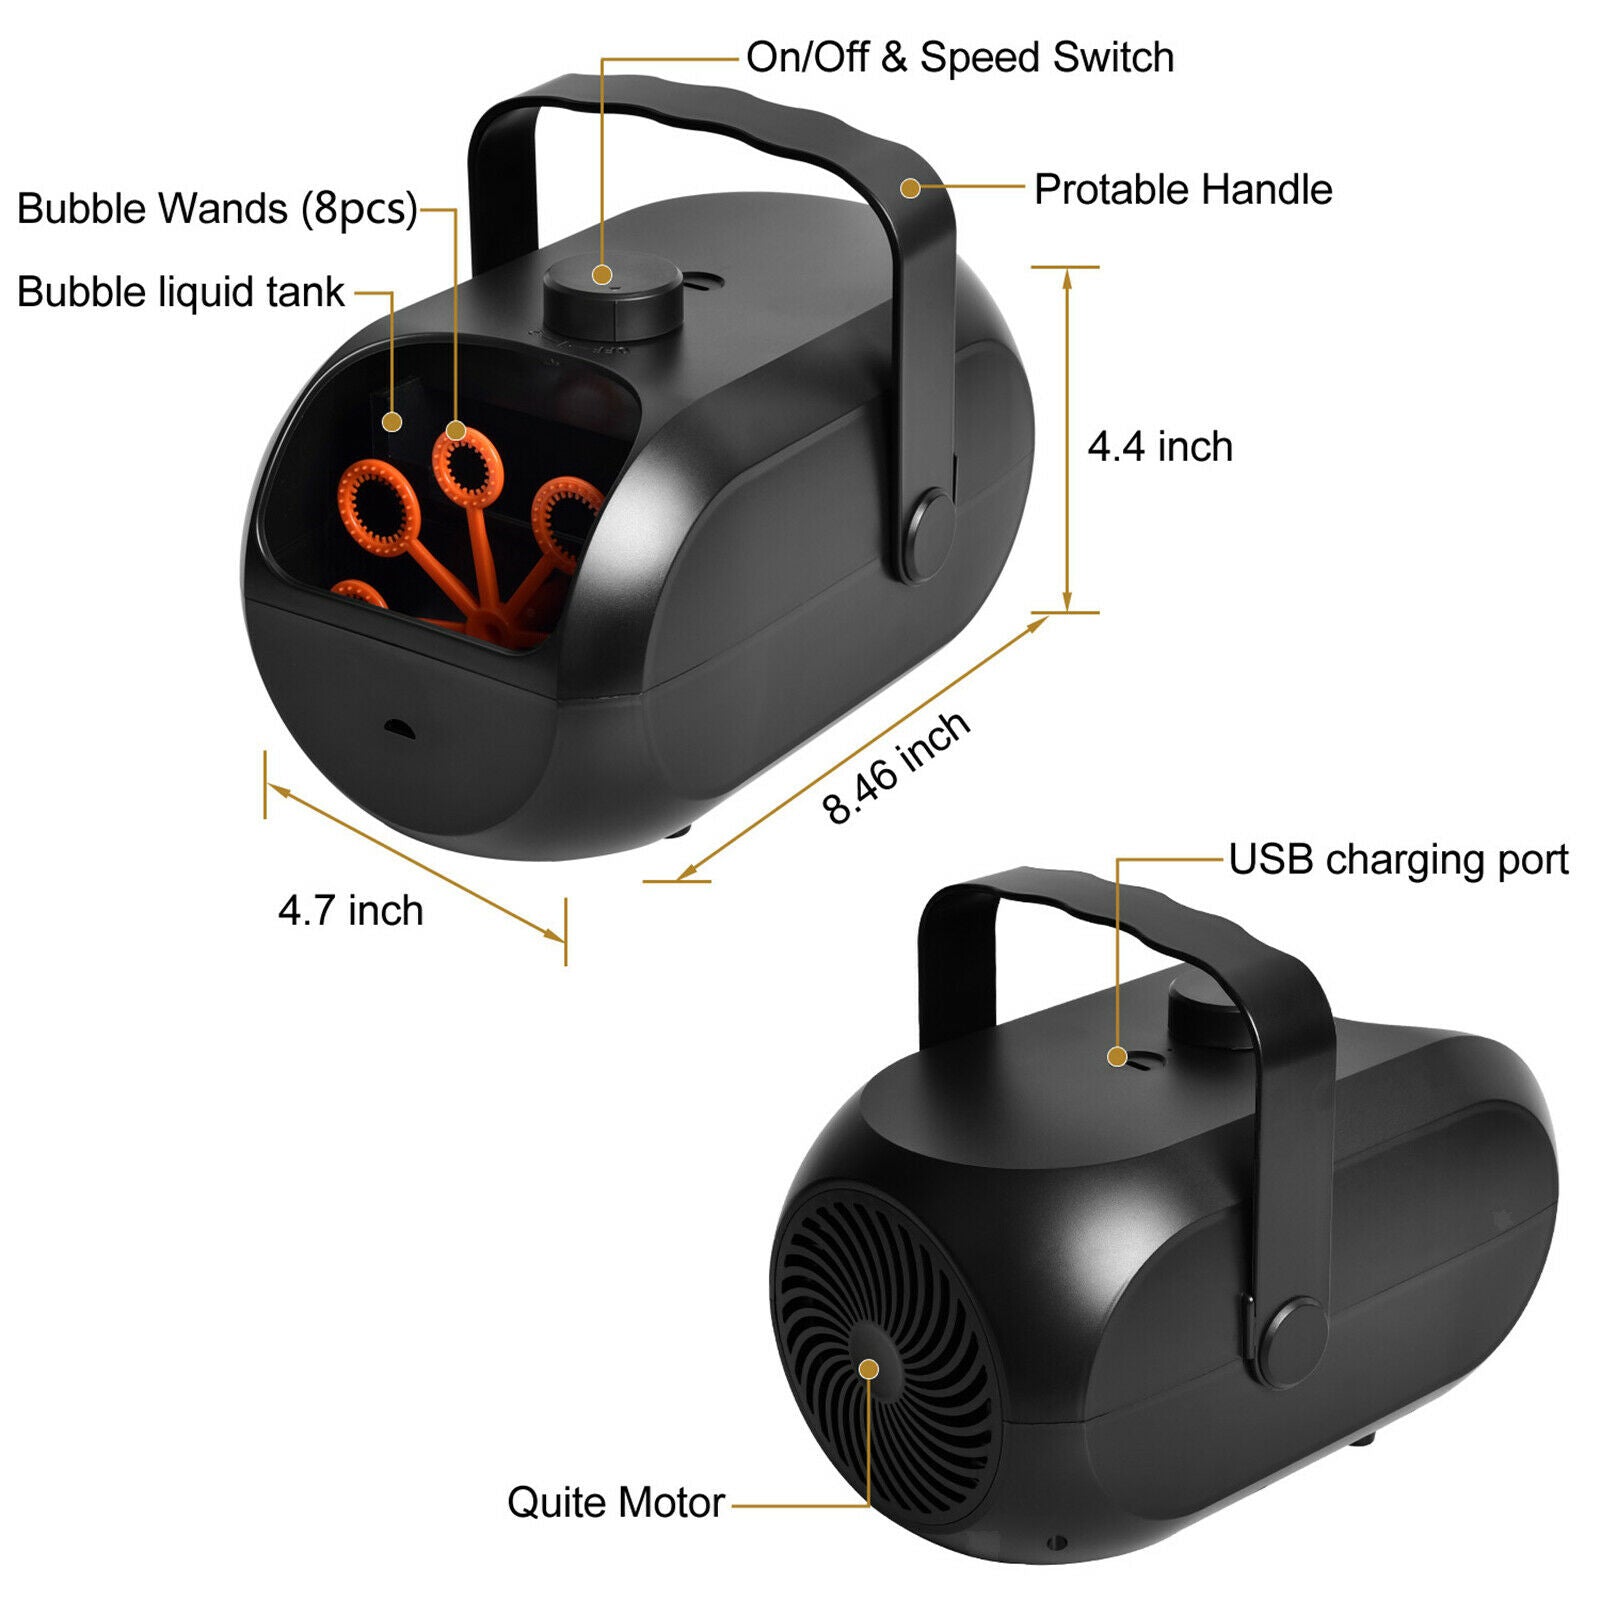 Portable Automatic Bubble Maker Rechargeable Durable Black